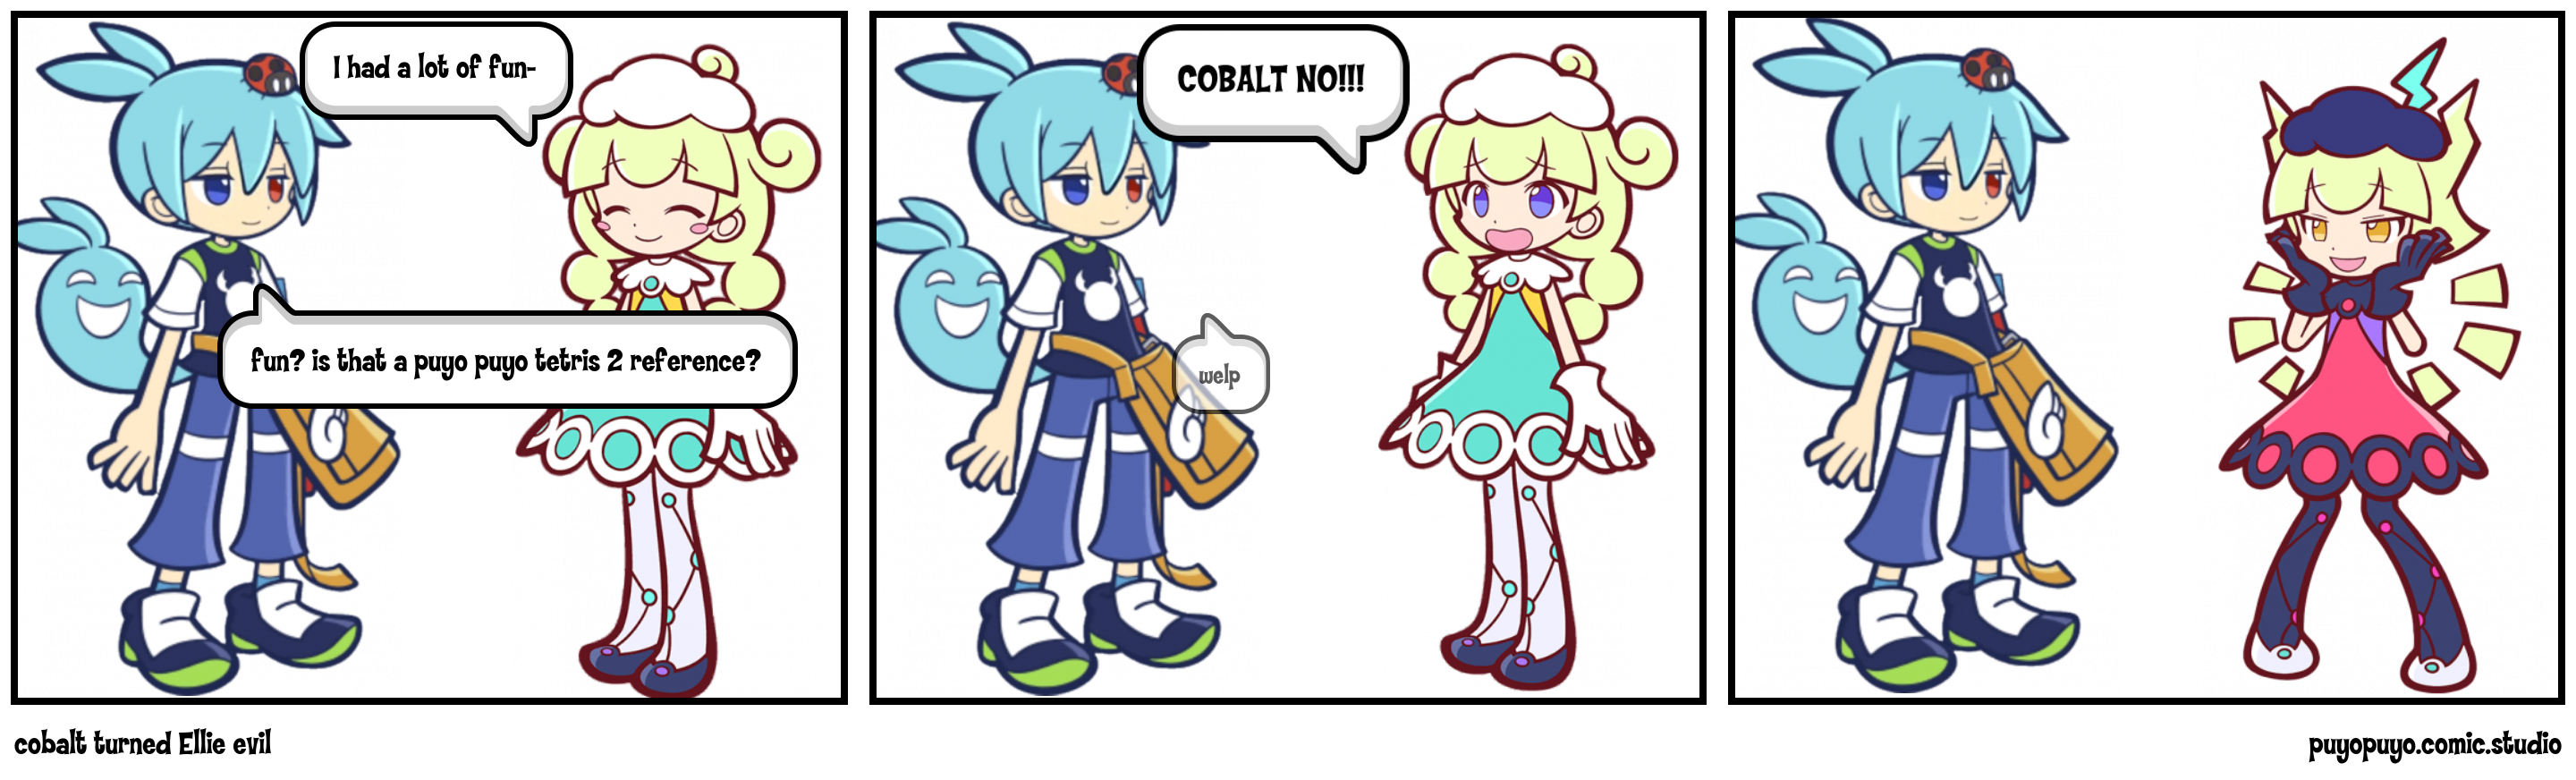 cobalt turned Ellie evil